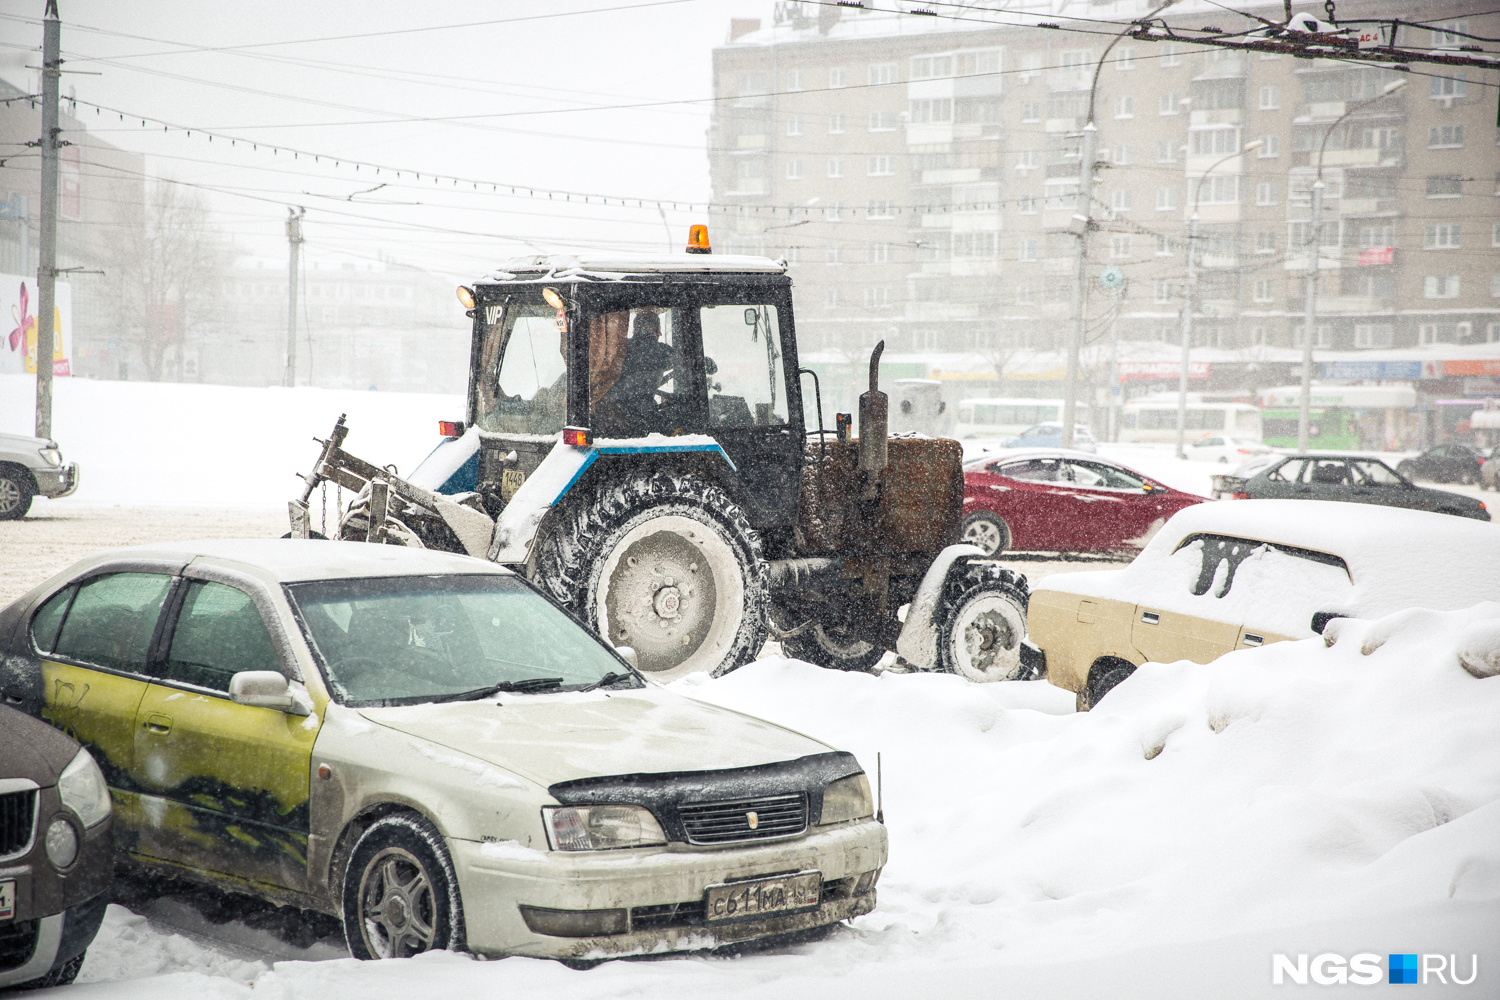 Городские службы пообещали <a href="https://ngs.ru/text/gorod/2018/09/25/65427161/" target="_blank" class="_">подготовиться к снегопадам</a> и снарядили к зиме 500 спецмашин и тепловое копьё